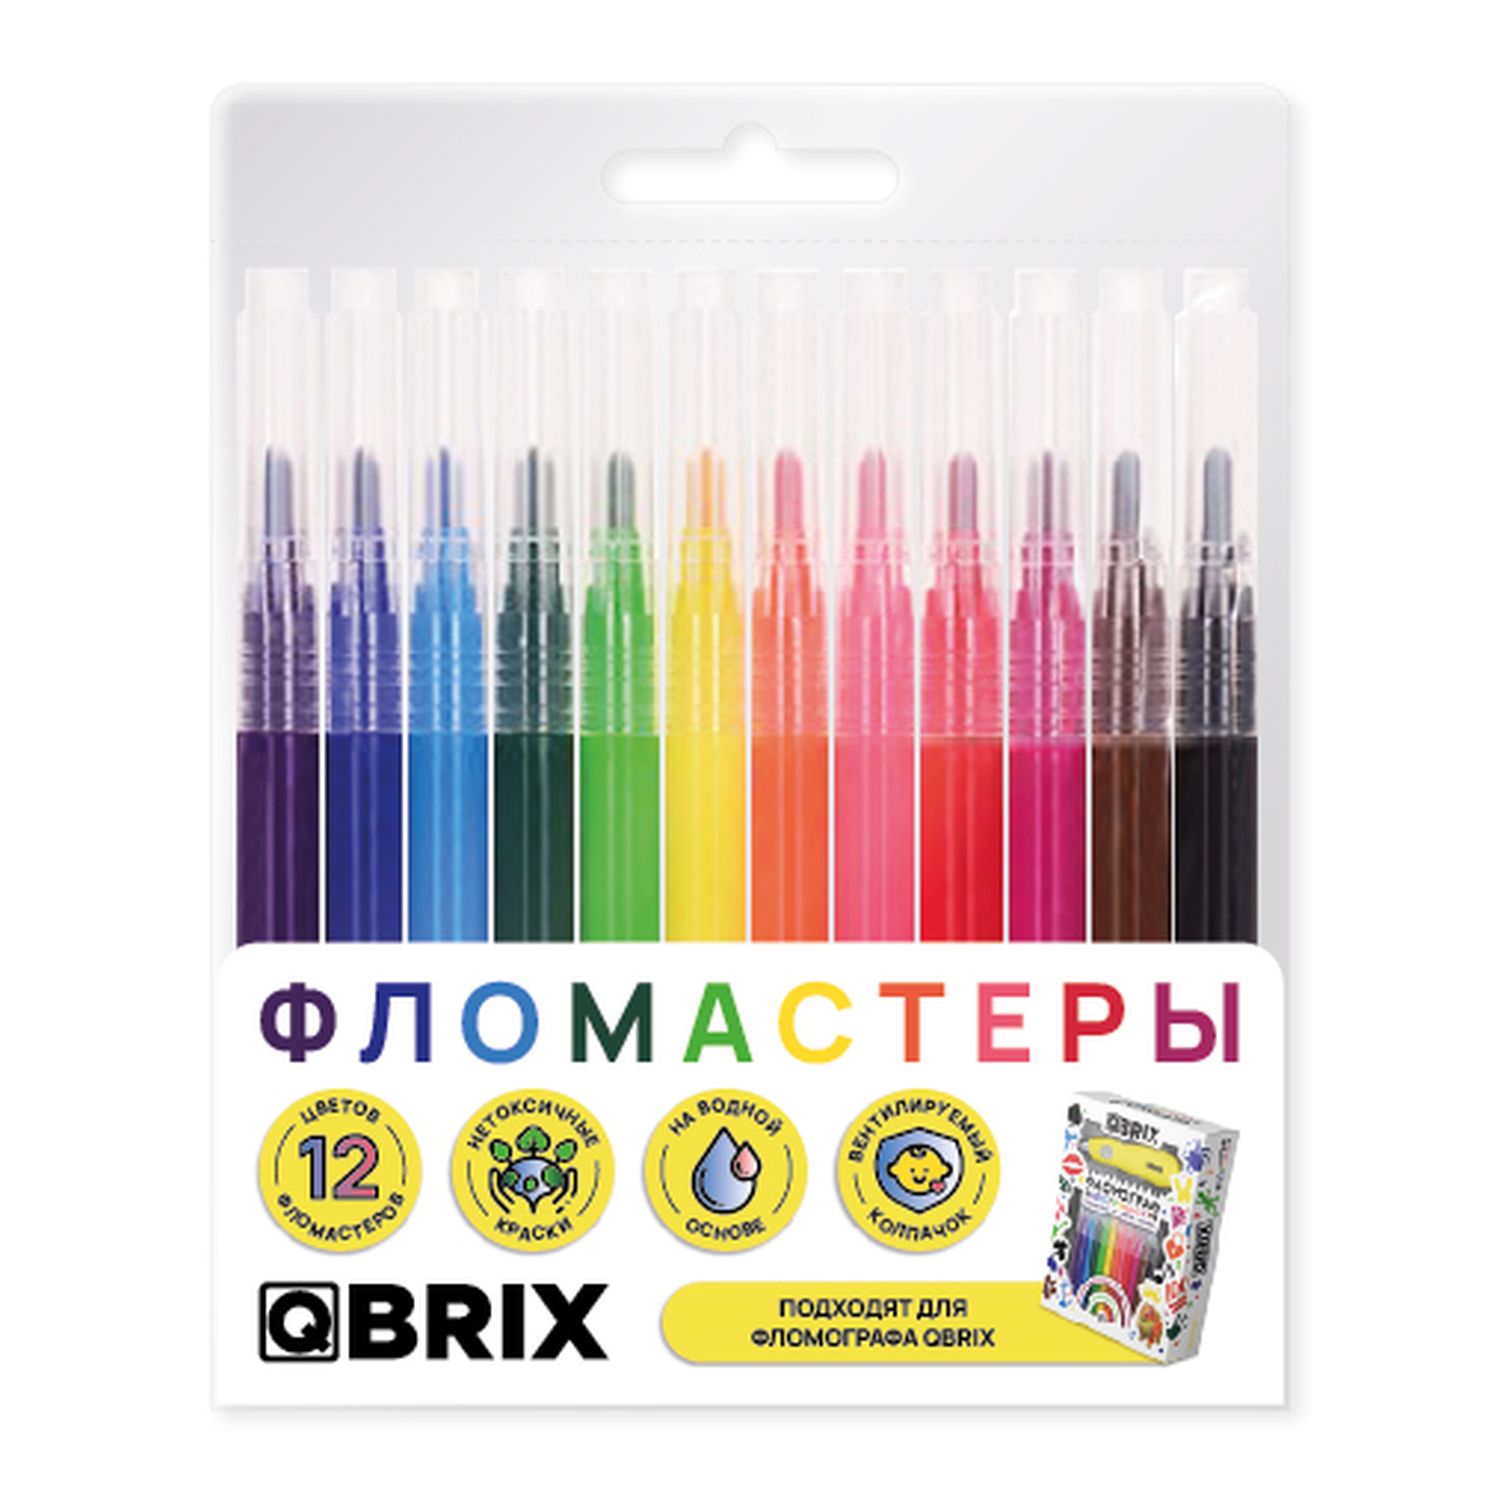 Фломастеры QBRIX, 12 цветов, дополнительный набор к фломографу